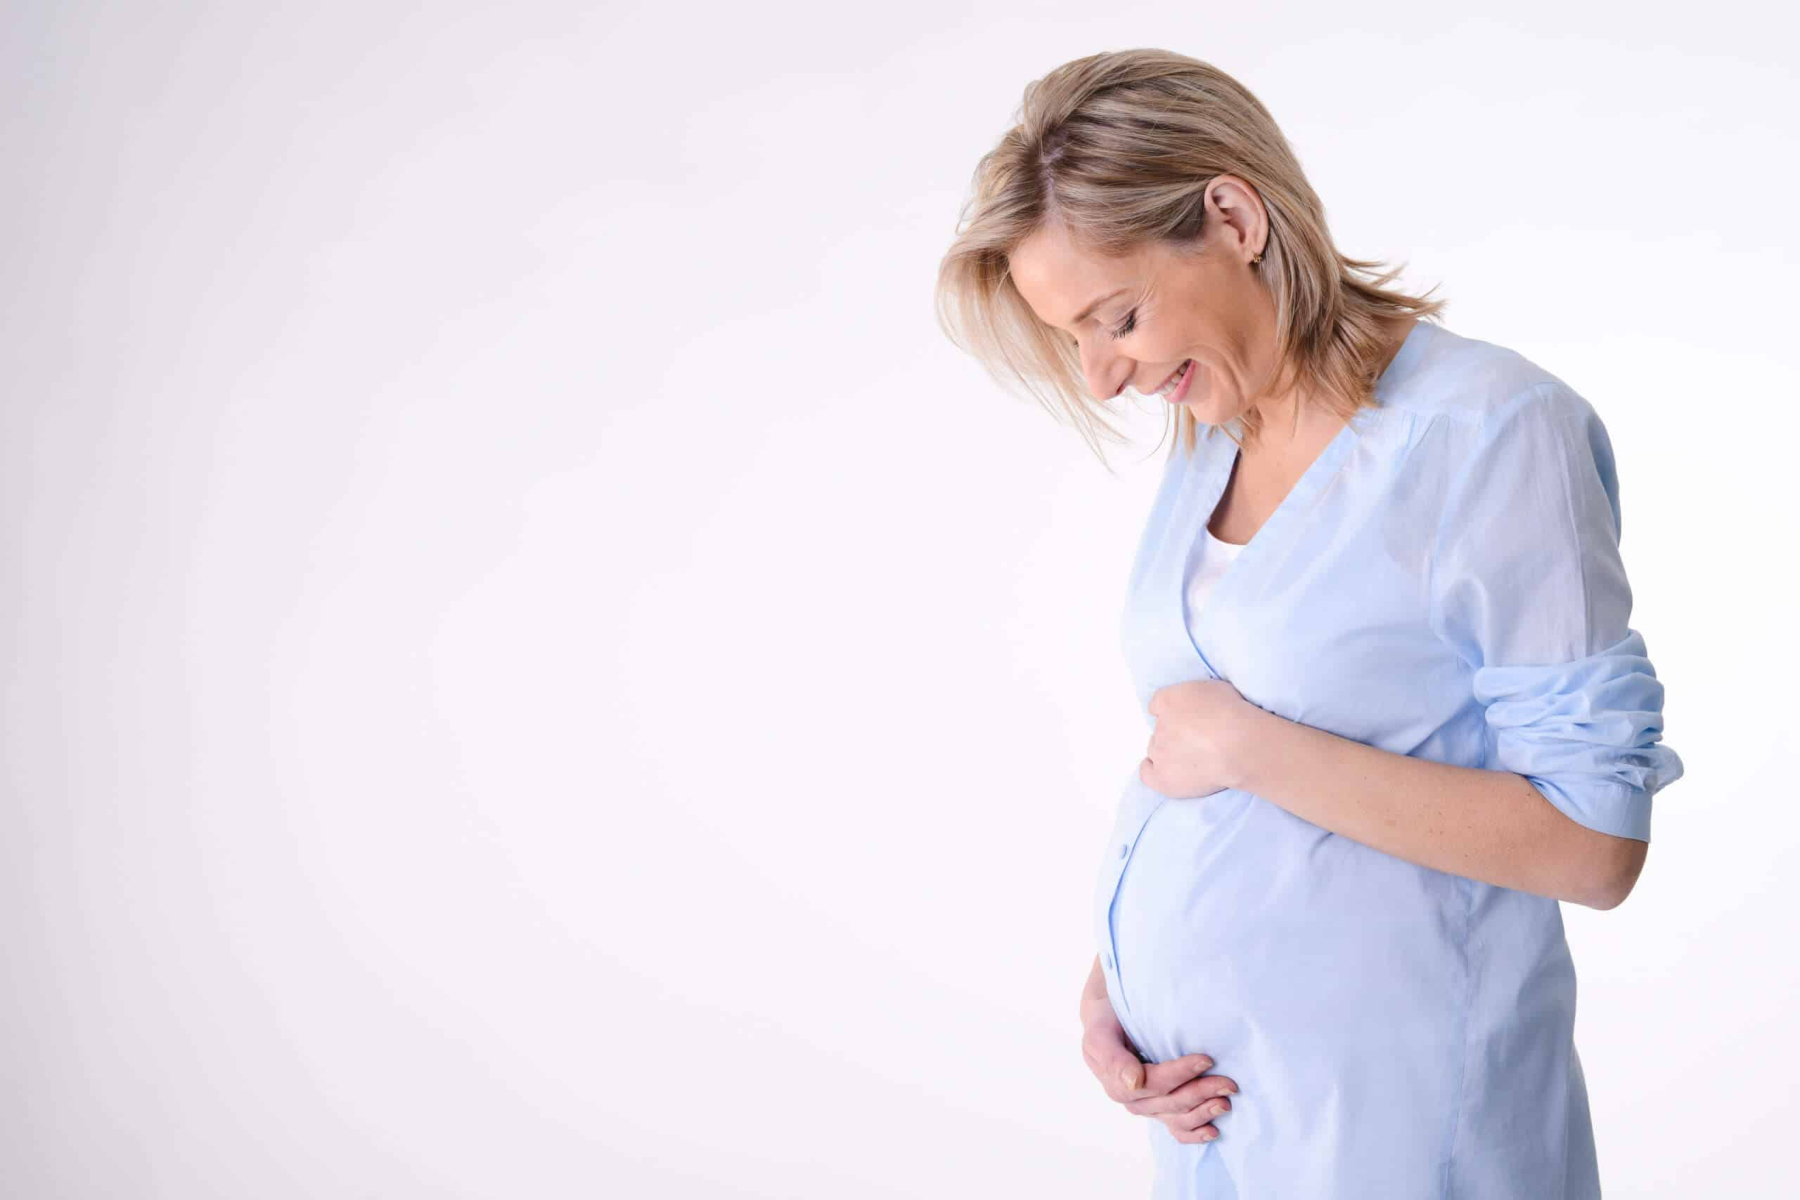 Στοματική υγεία: Τι μπορεί να μειώσει την ουλίτιδα που σχετίζεται με την εγκυμοσύνη;